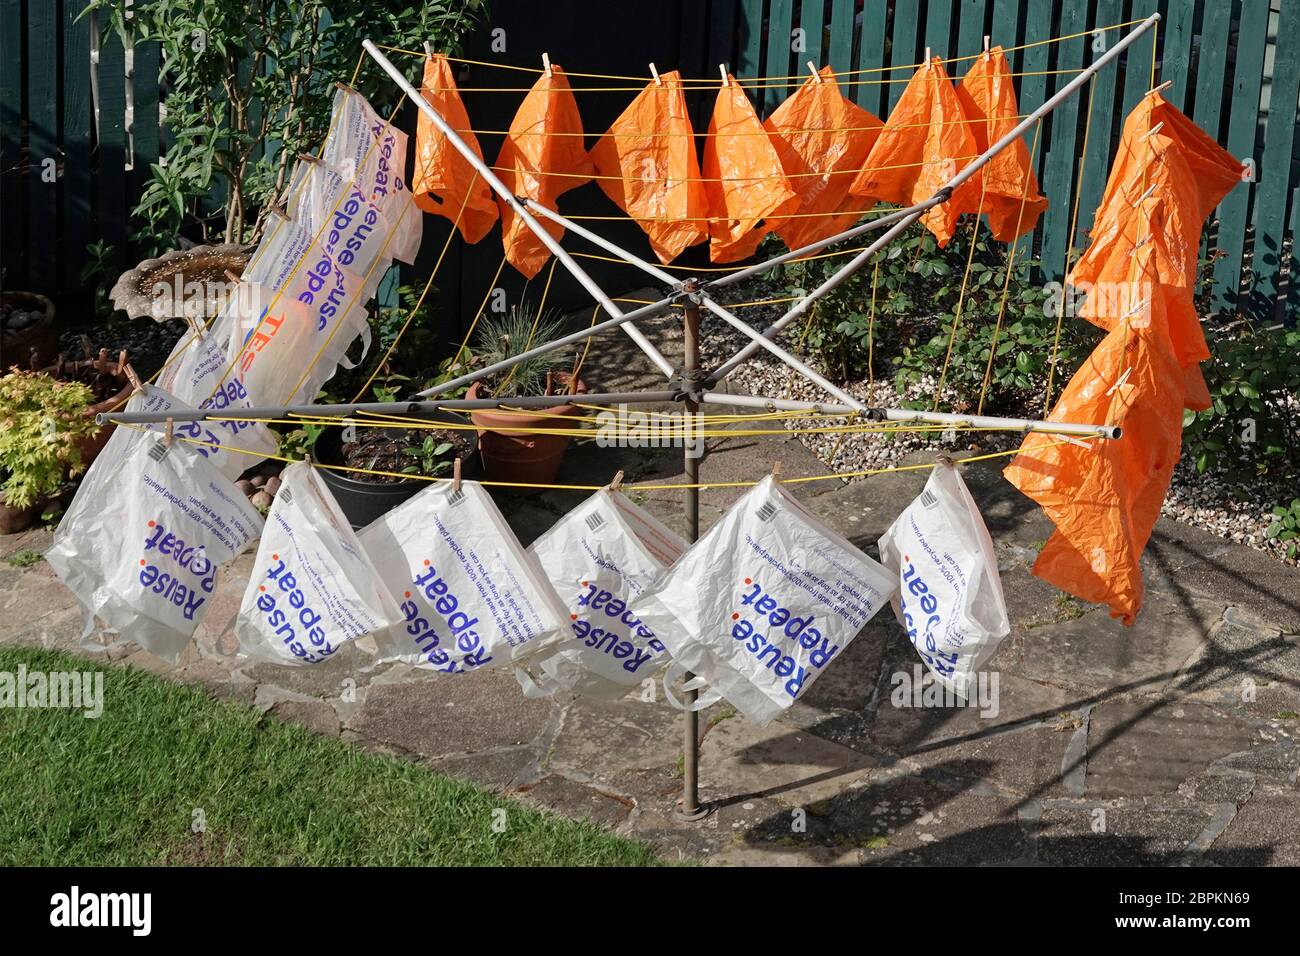 Supermercato plastica riciclata sacchetto riutilizzabile per trasporto asciutto all'aperto dopo acqua saponata lavaggio coronavirus precauzione fornito con la consegna online UK Foto Stock